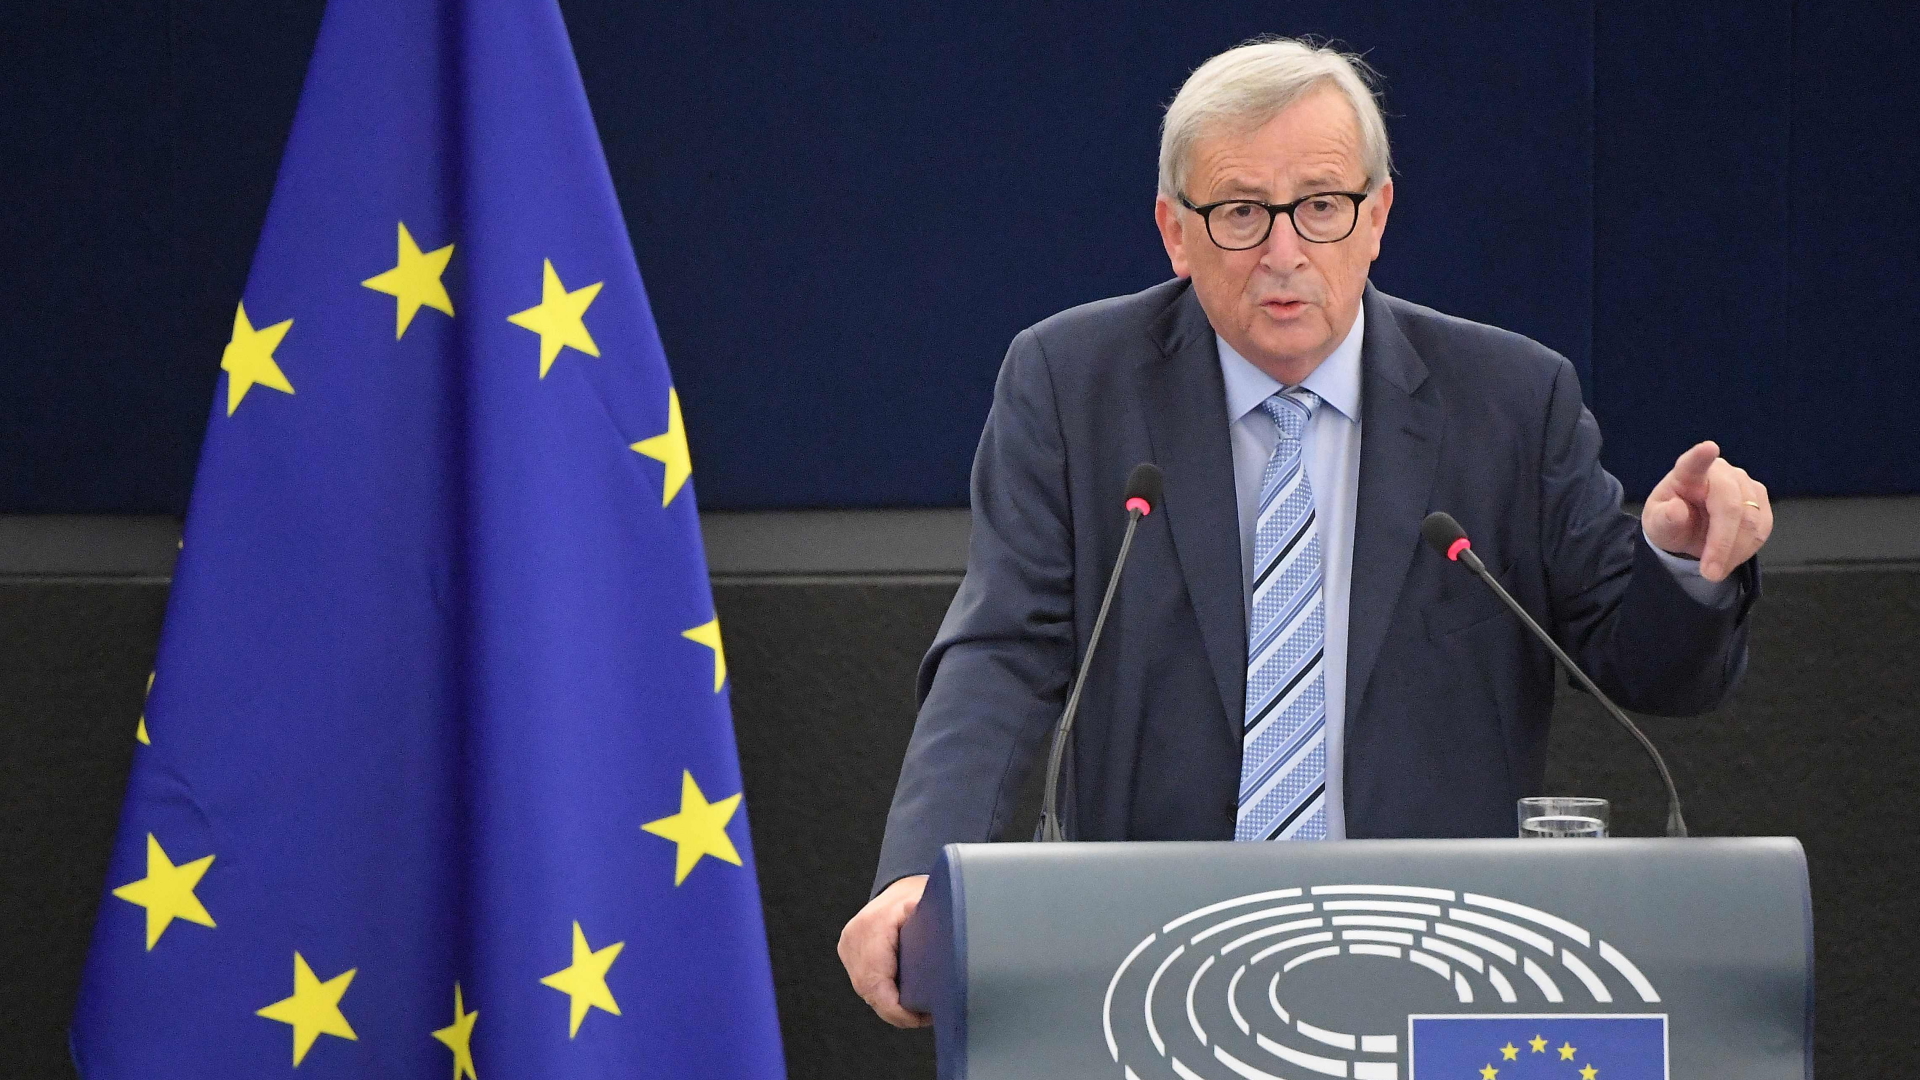 Der scheidende Präsident der Europäischen Kommission, Jean-Claude Juncker, hält seine Abschiedsrede im Europäischen Parlament in Straßburg. | AFP